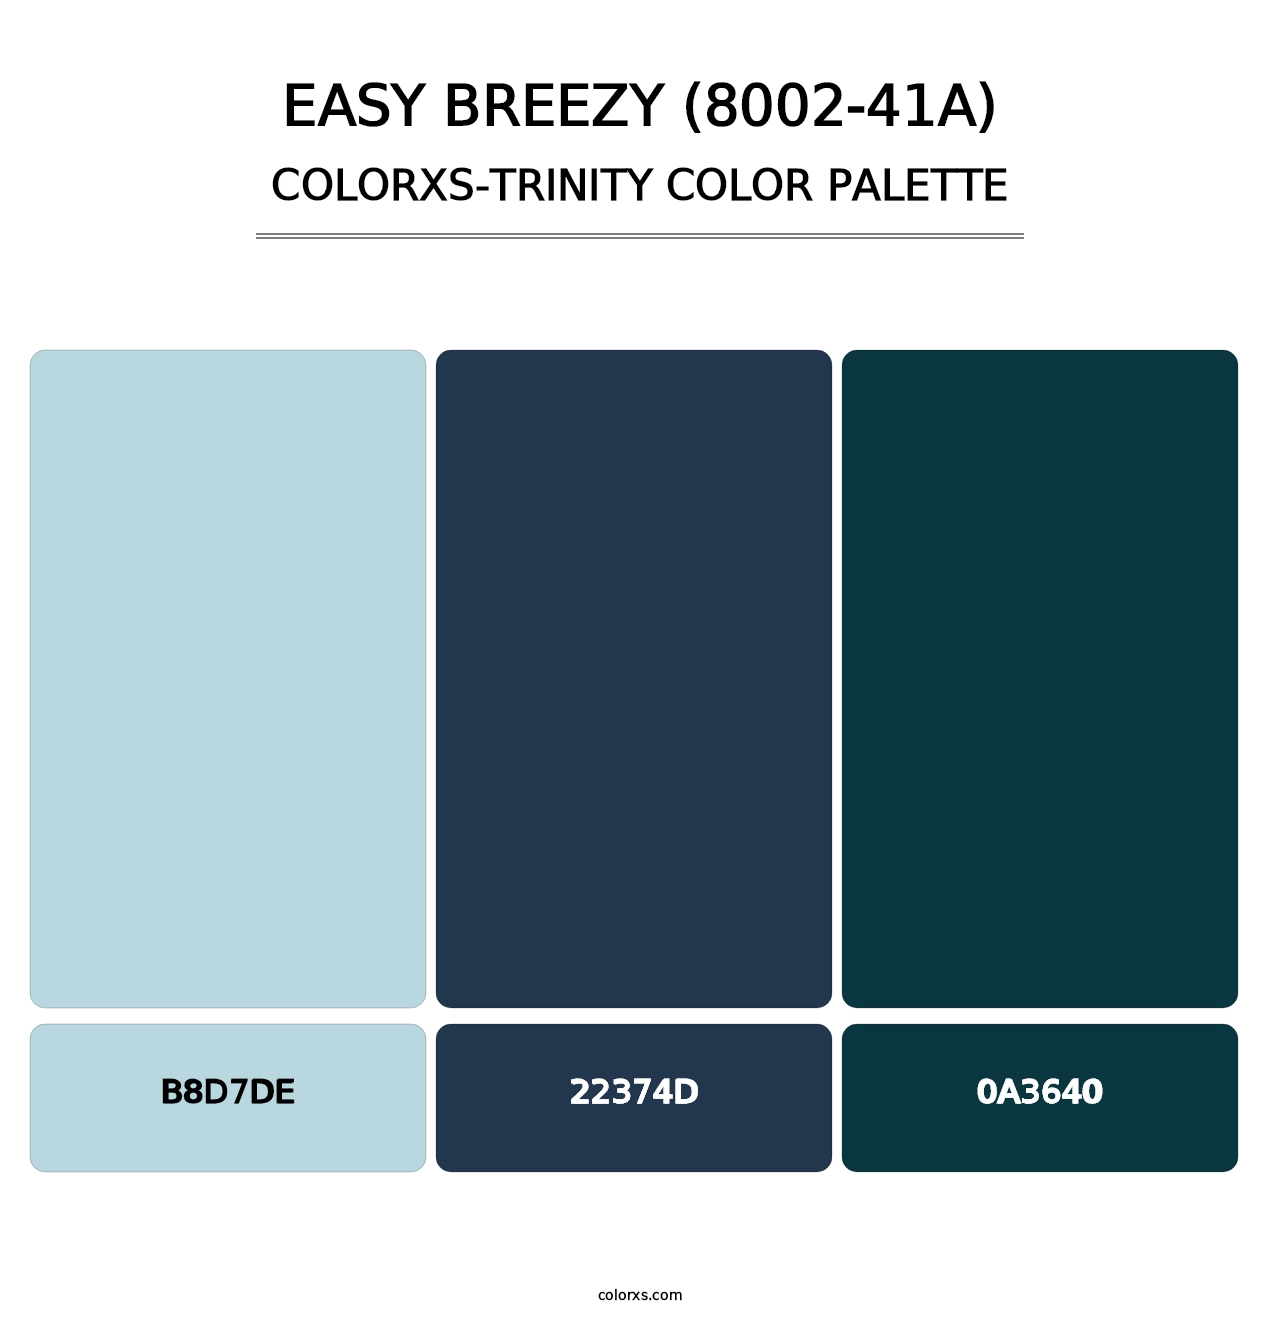 Easy Breezy (8002-41A) - Colorxs Trinity Palette